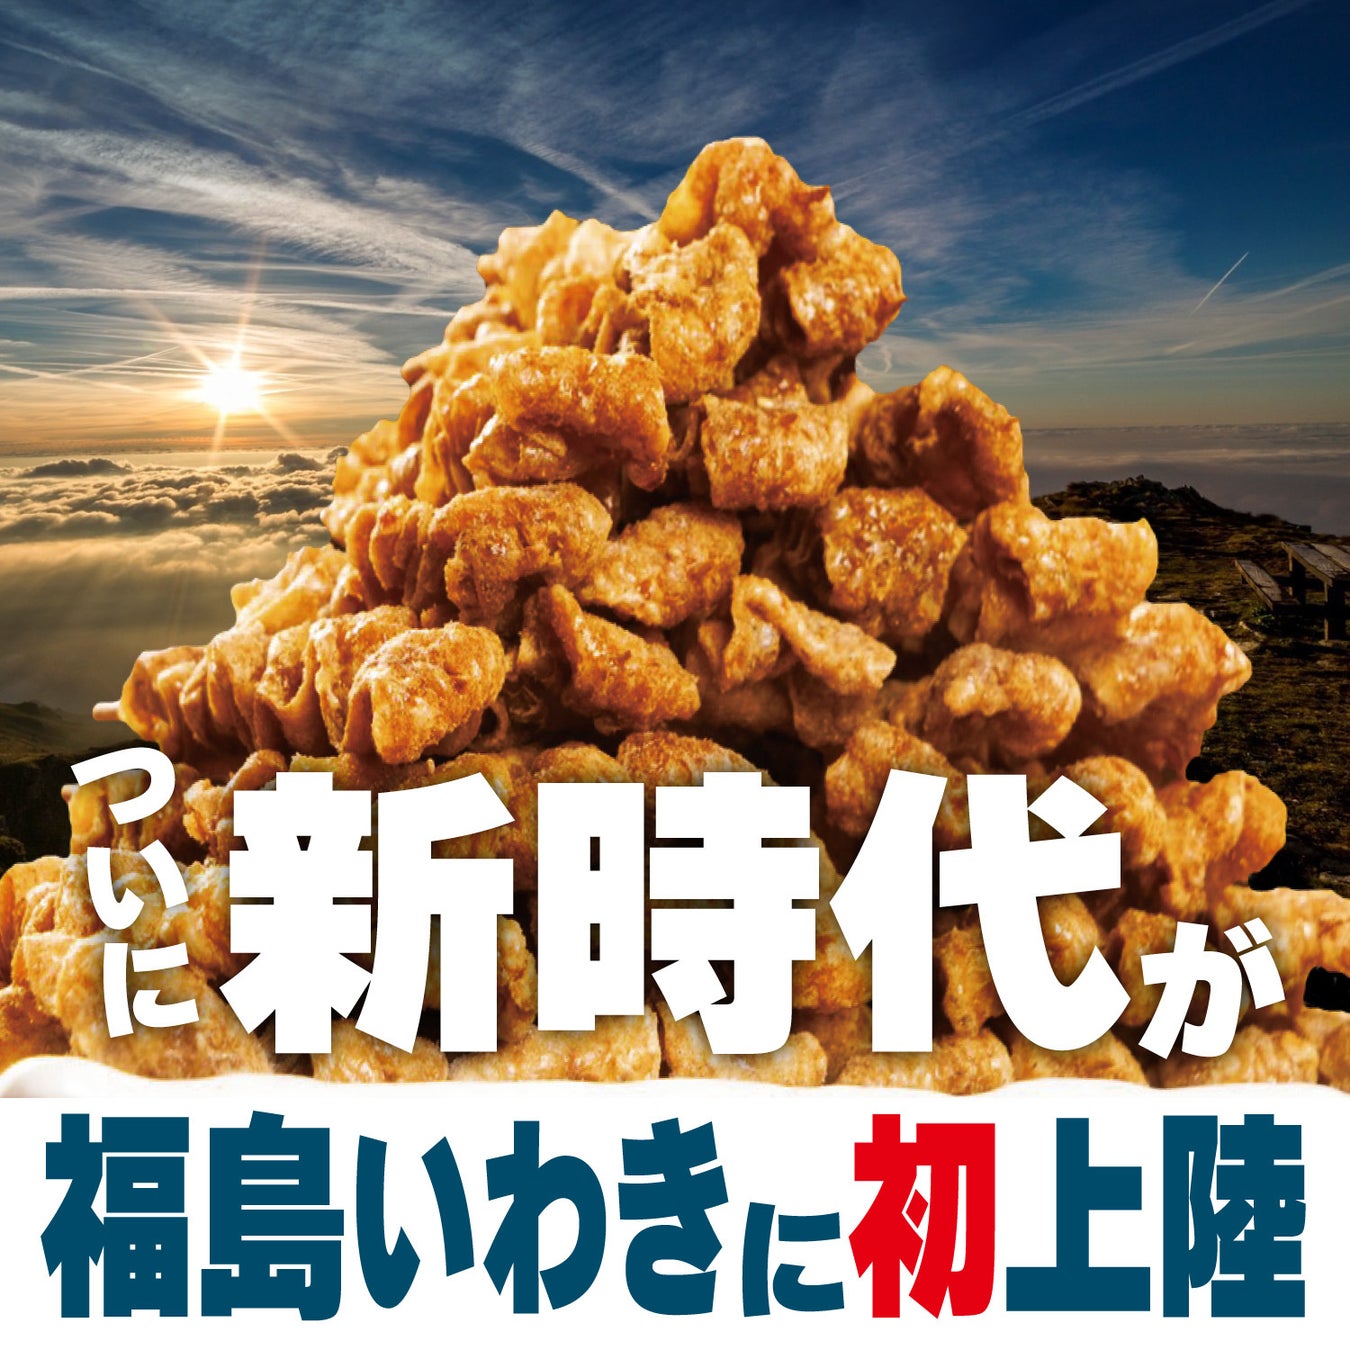 企業広告「食事は未来へ篇」15秒 渋谷109フォーラムビジョンで放映開始